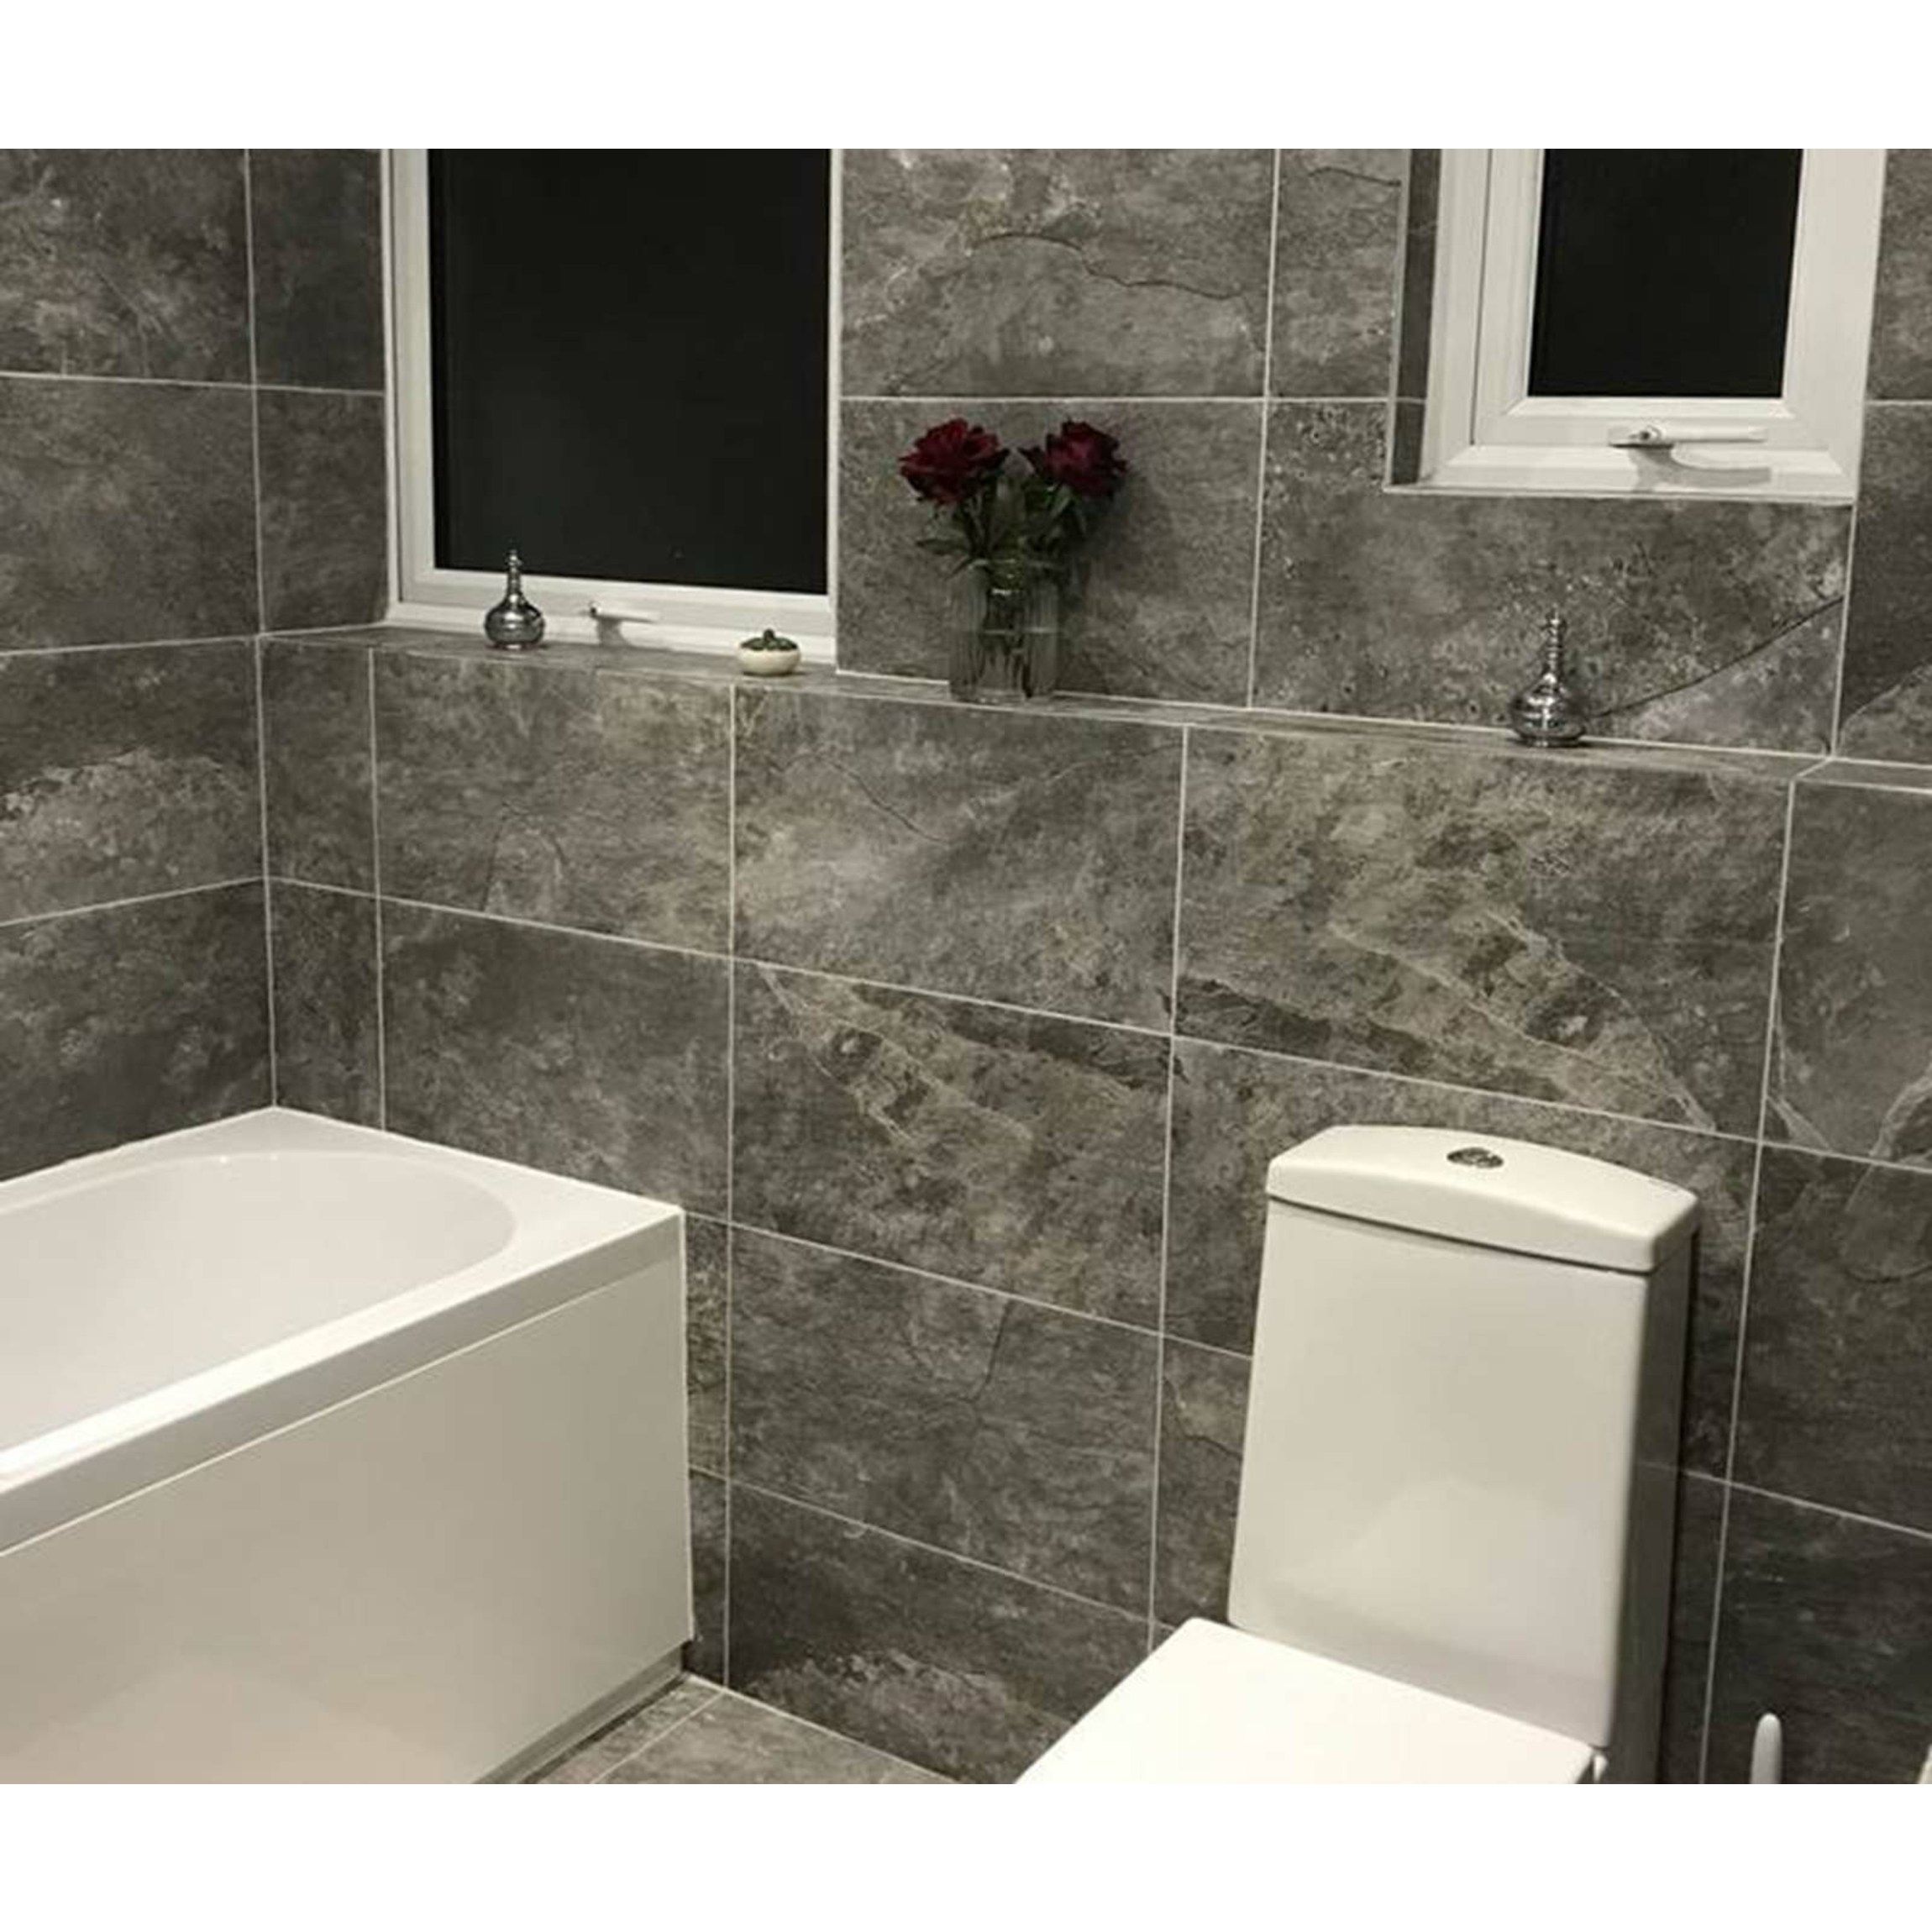 Coda Grey Wall And Floor Tiles, Tiles For Bathroom Wall And Floor